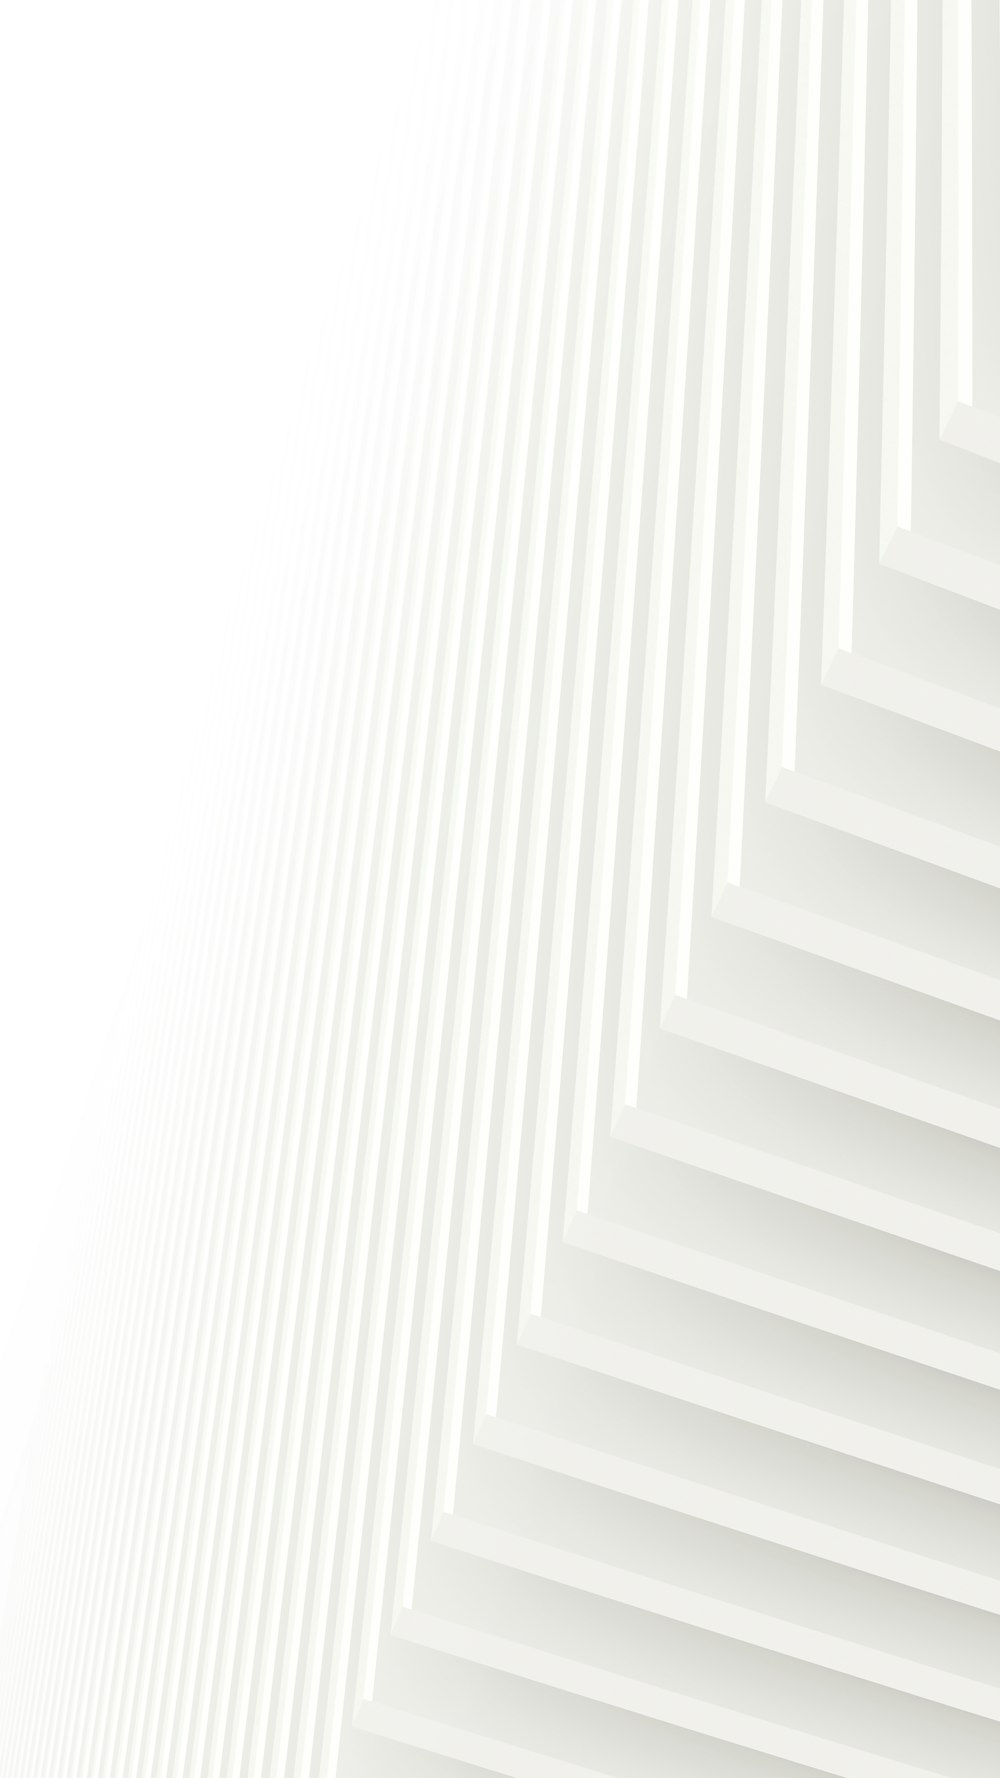 Un fondo blanco abstracto con líneas verticales